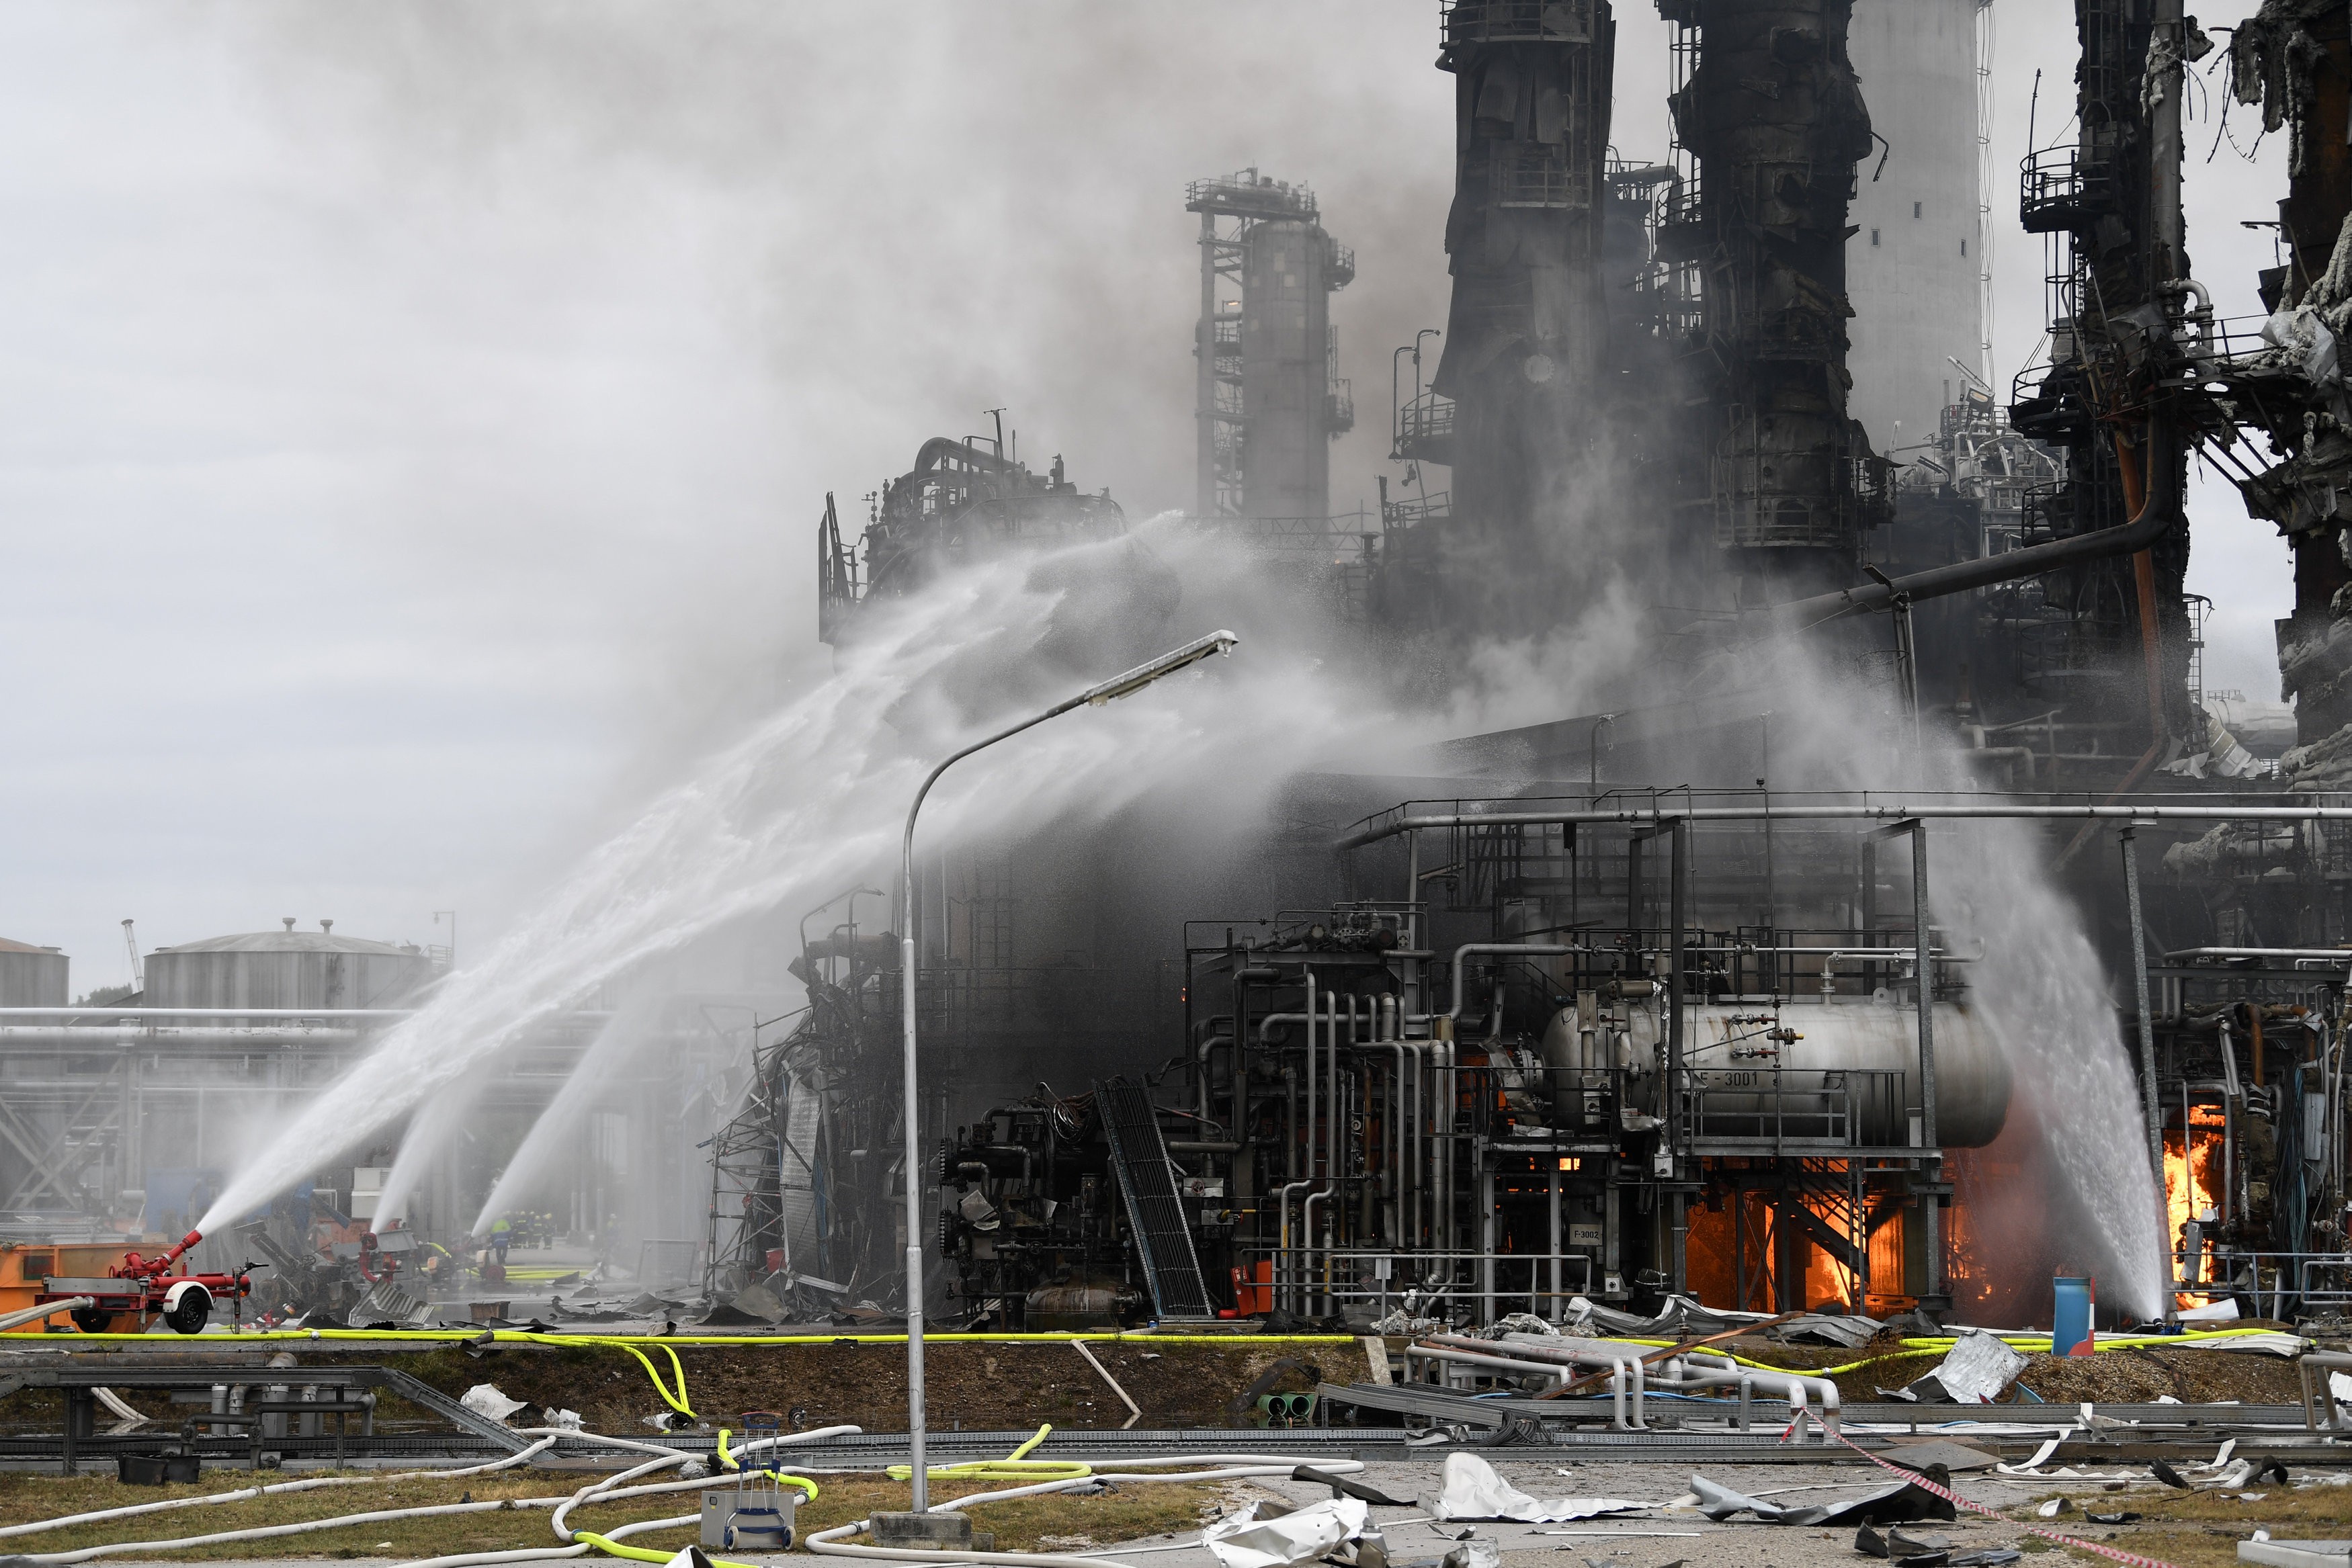 Shpërthen rafineria e naftës në Gjermani